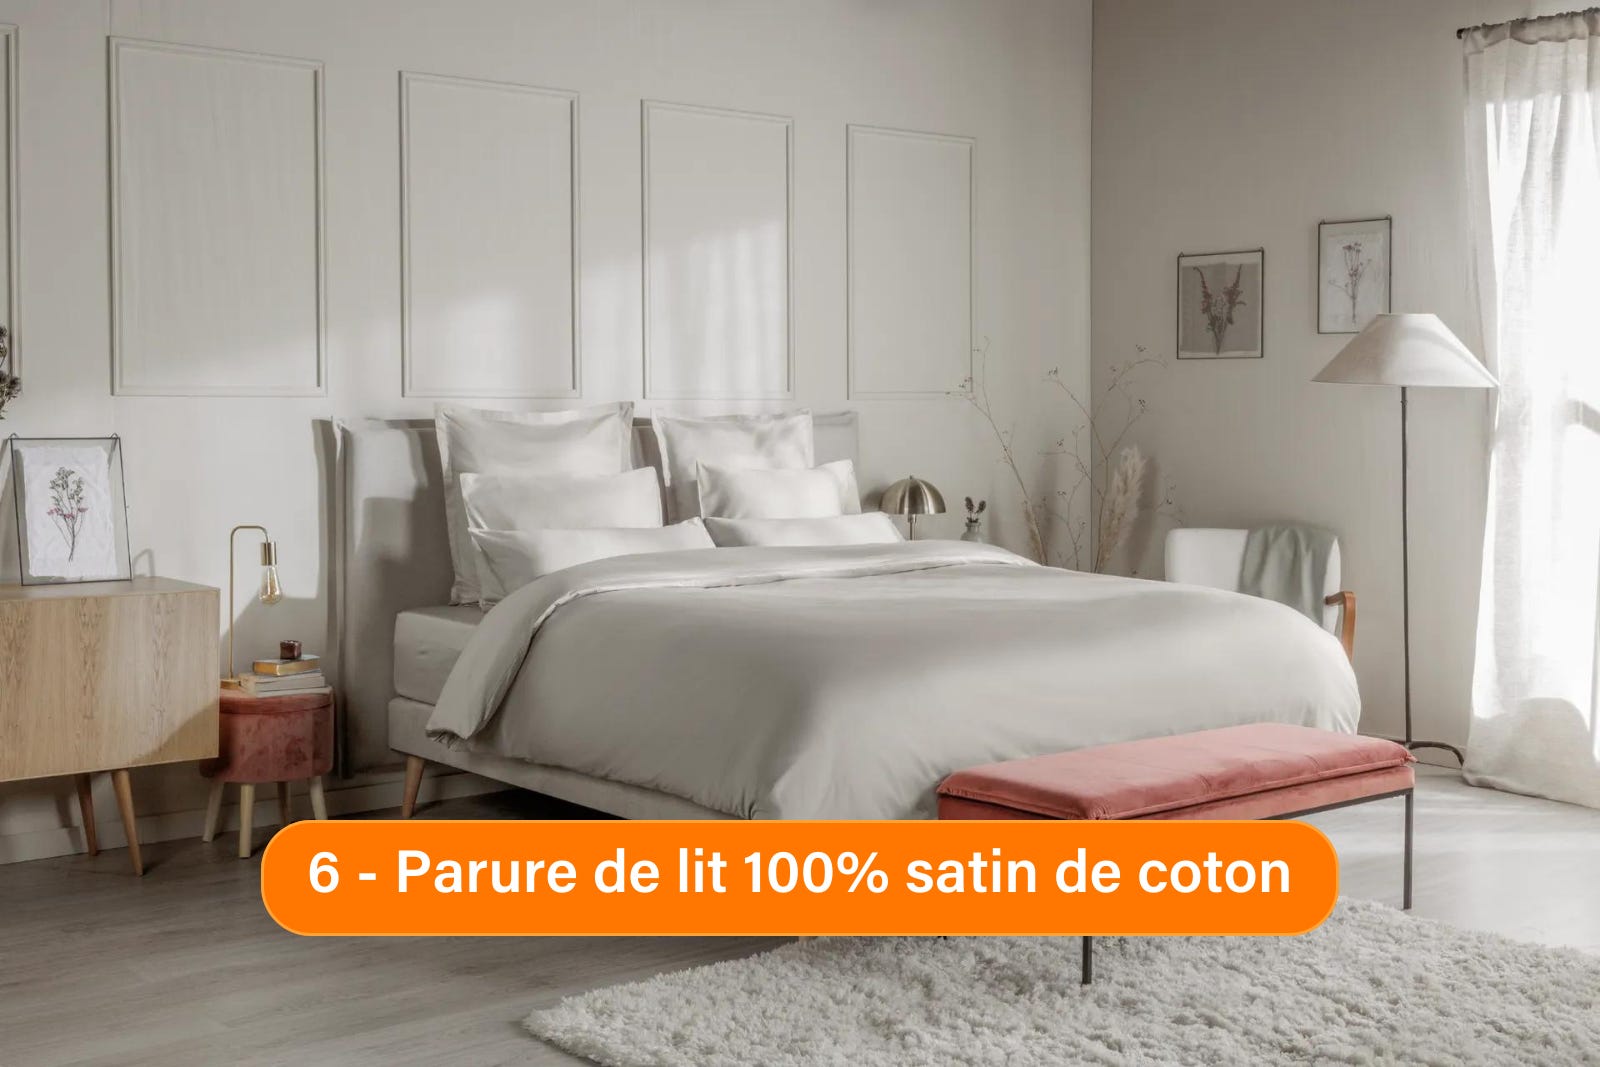 Bed linen Satin de Coton Bundle presentation.png